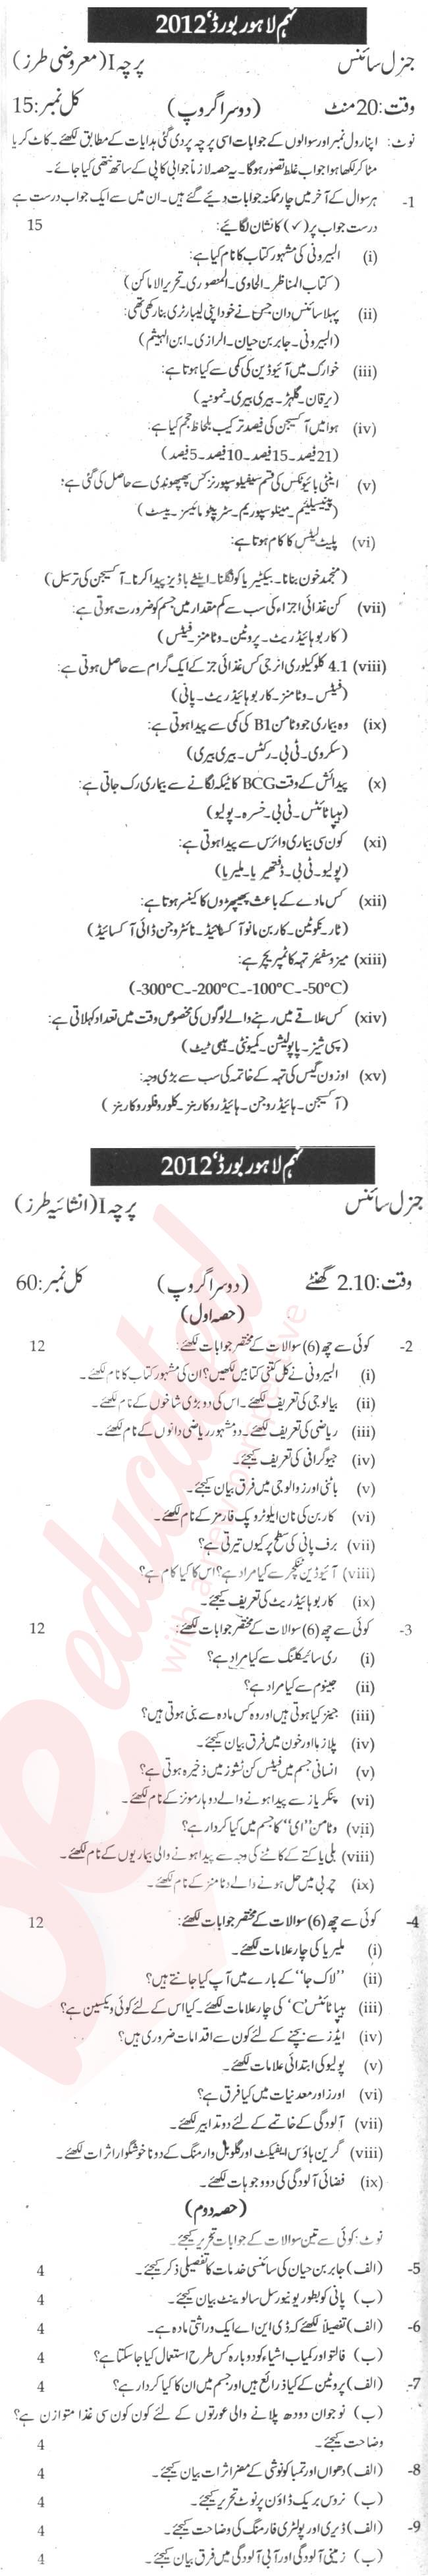 General Science 9th Urdu Medium Past Paper Group 2 BISE Lahore 2012